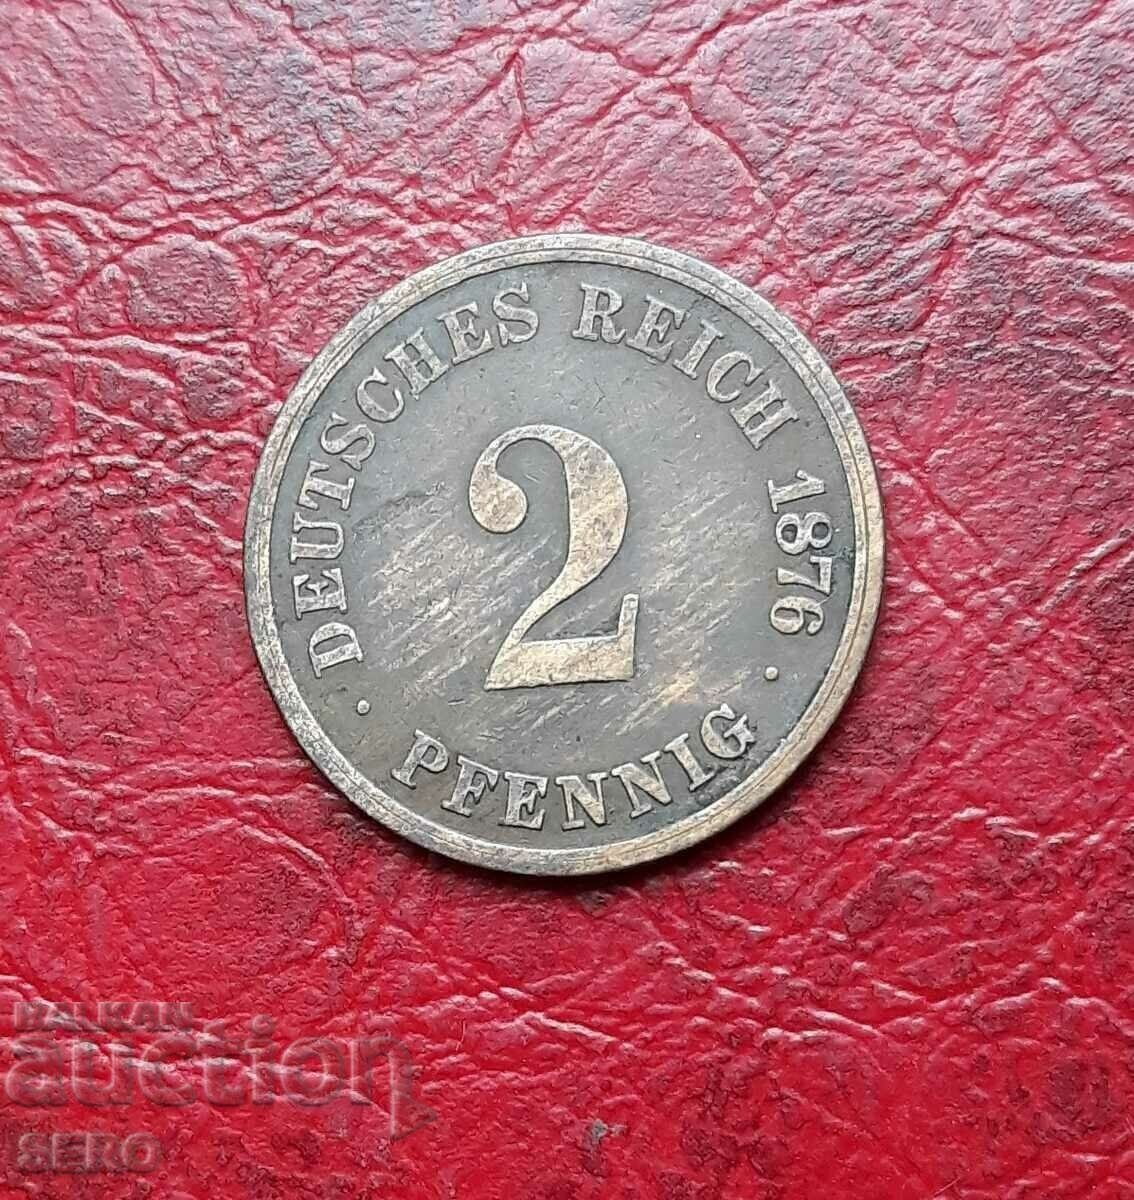 Germany-2 pfennig 1876 D-Munich